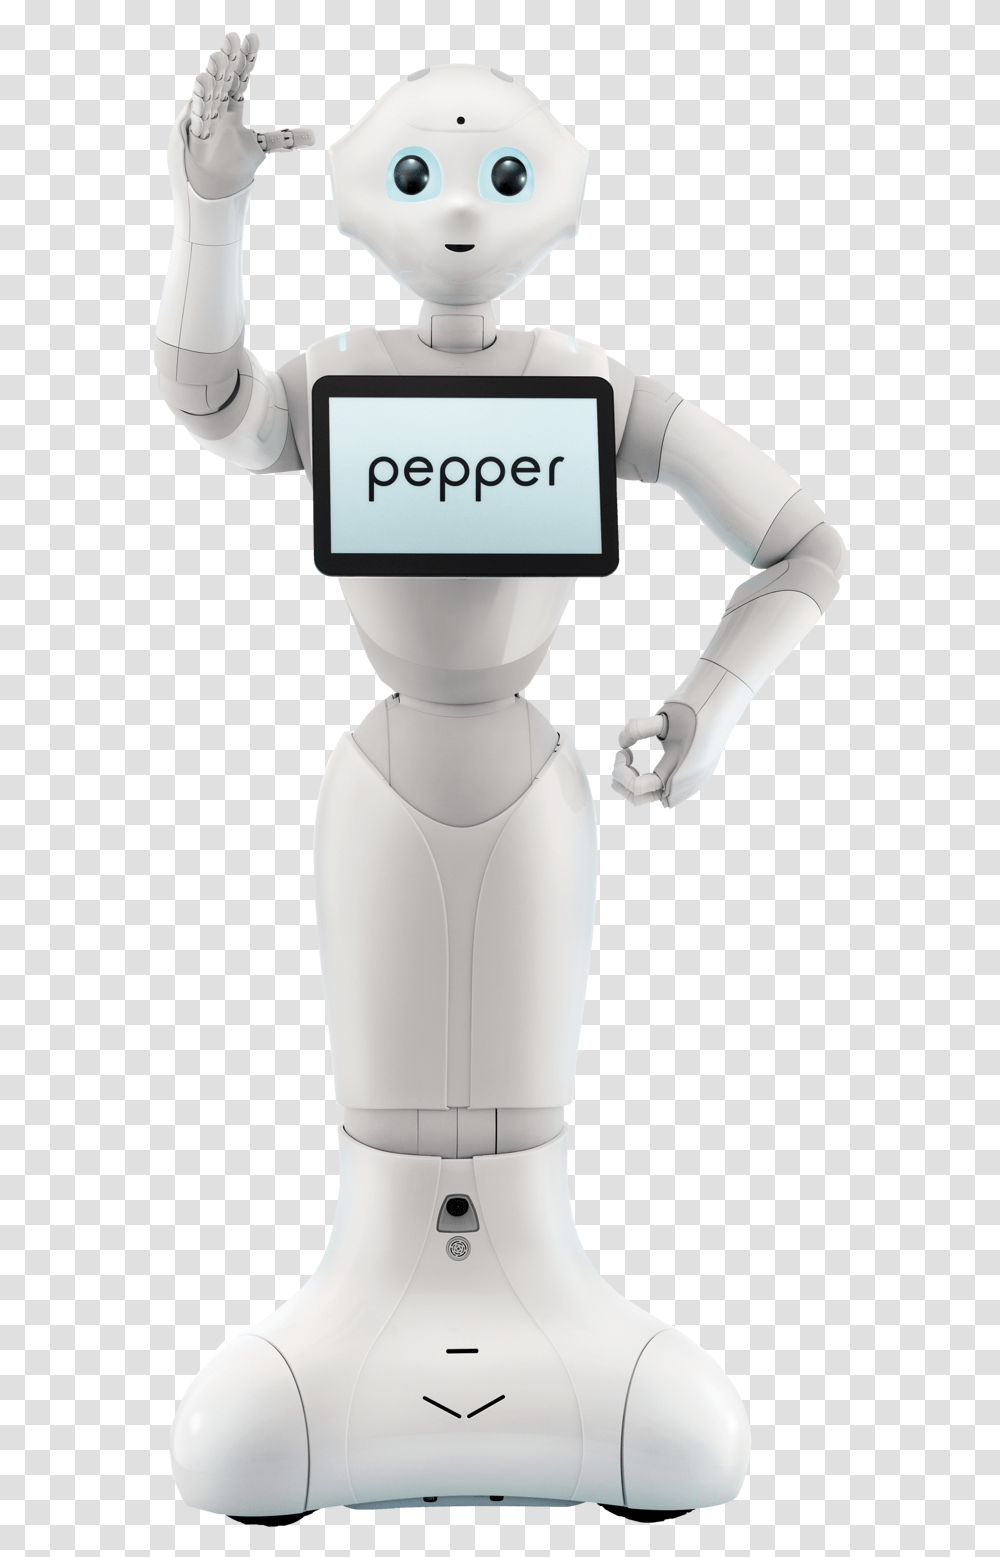 Pepper Robot, Snowman, Winter, Outdoors, Nature Transparent Png